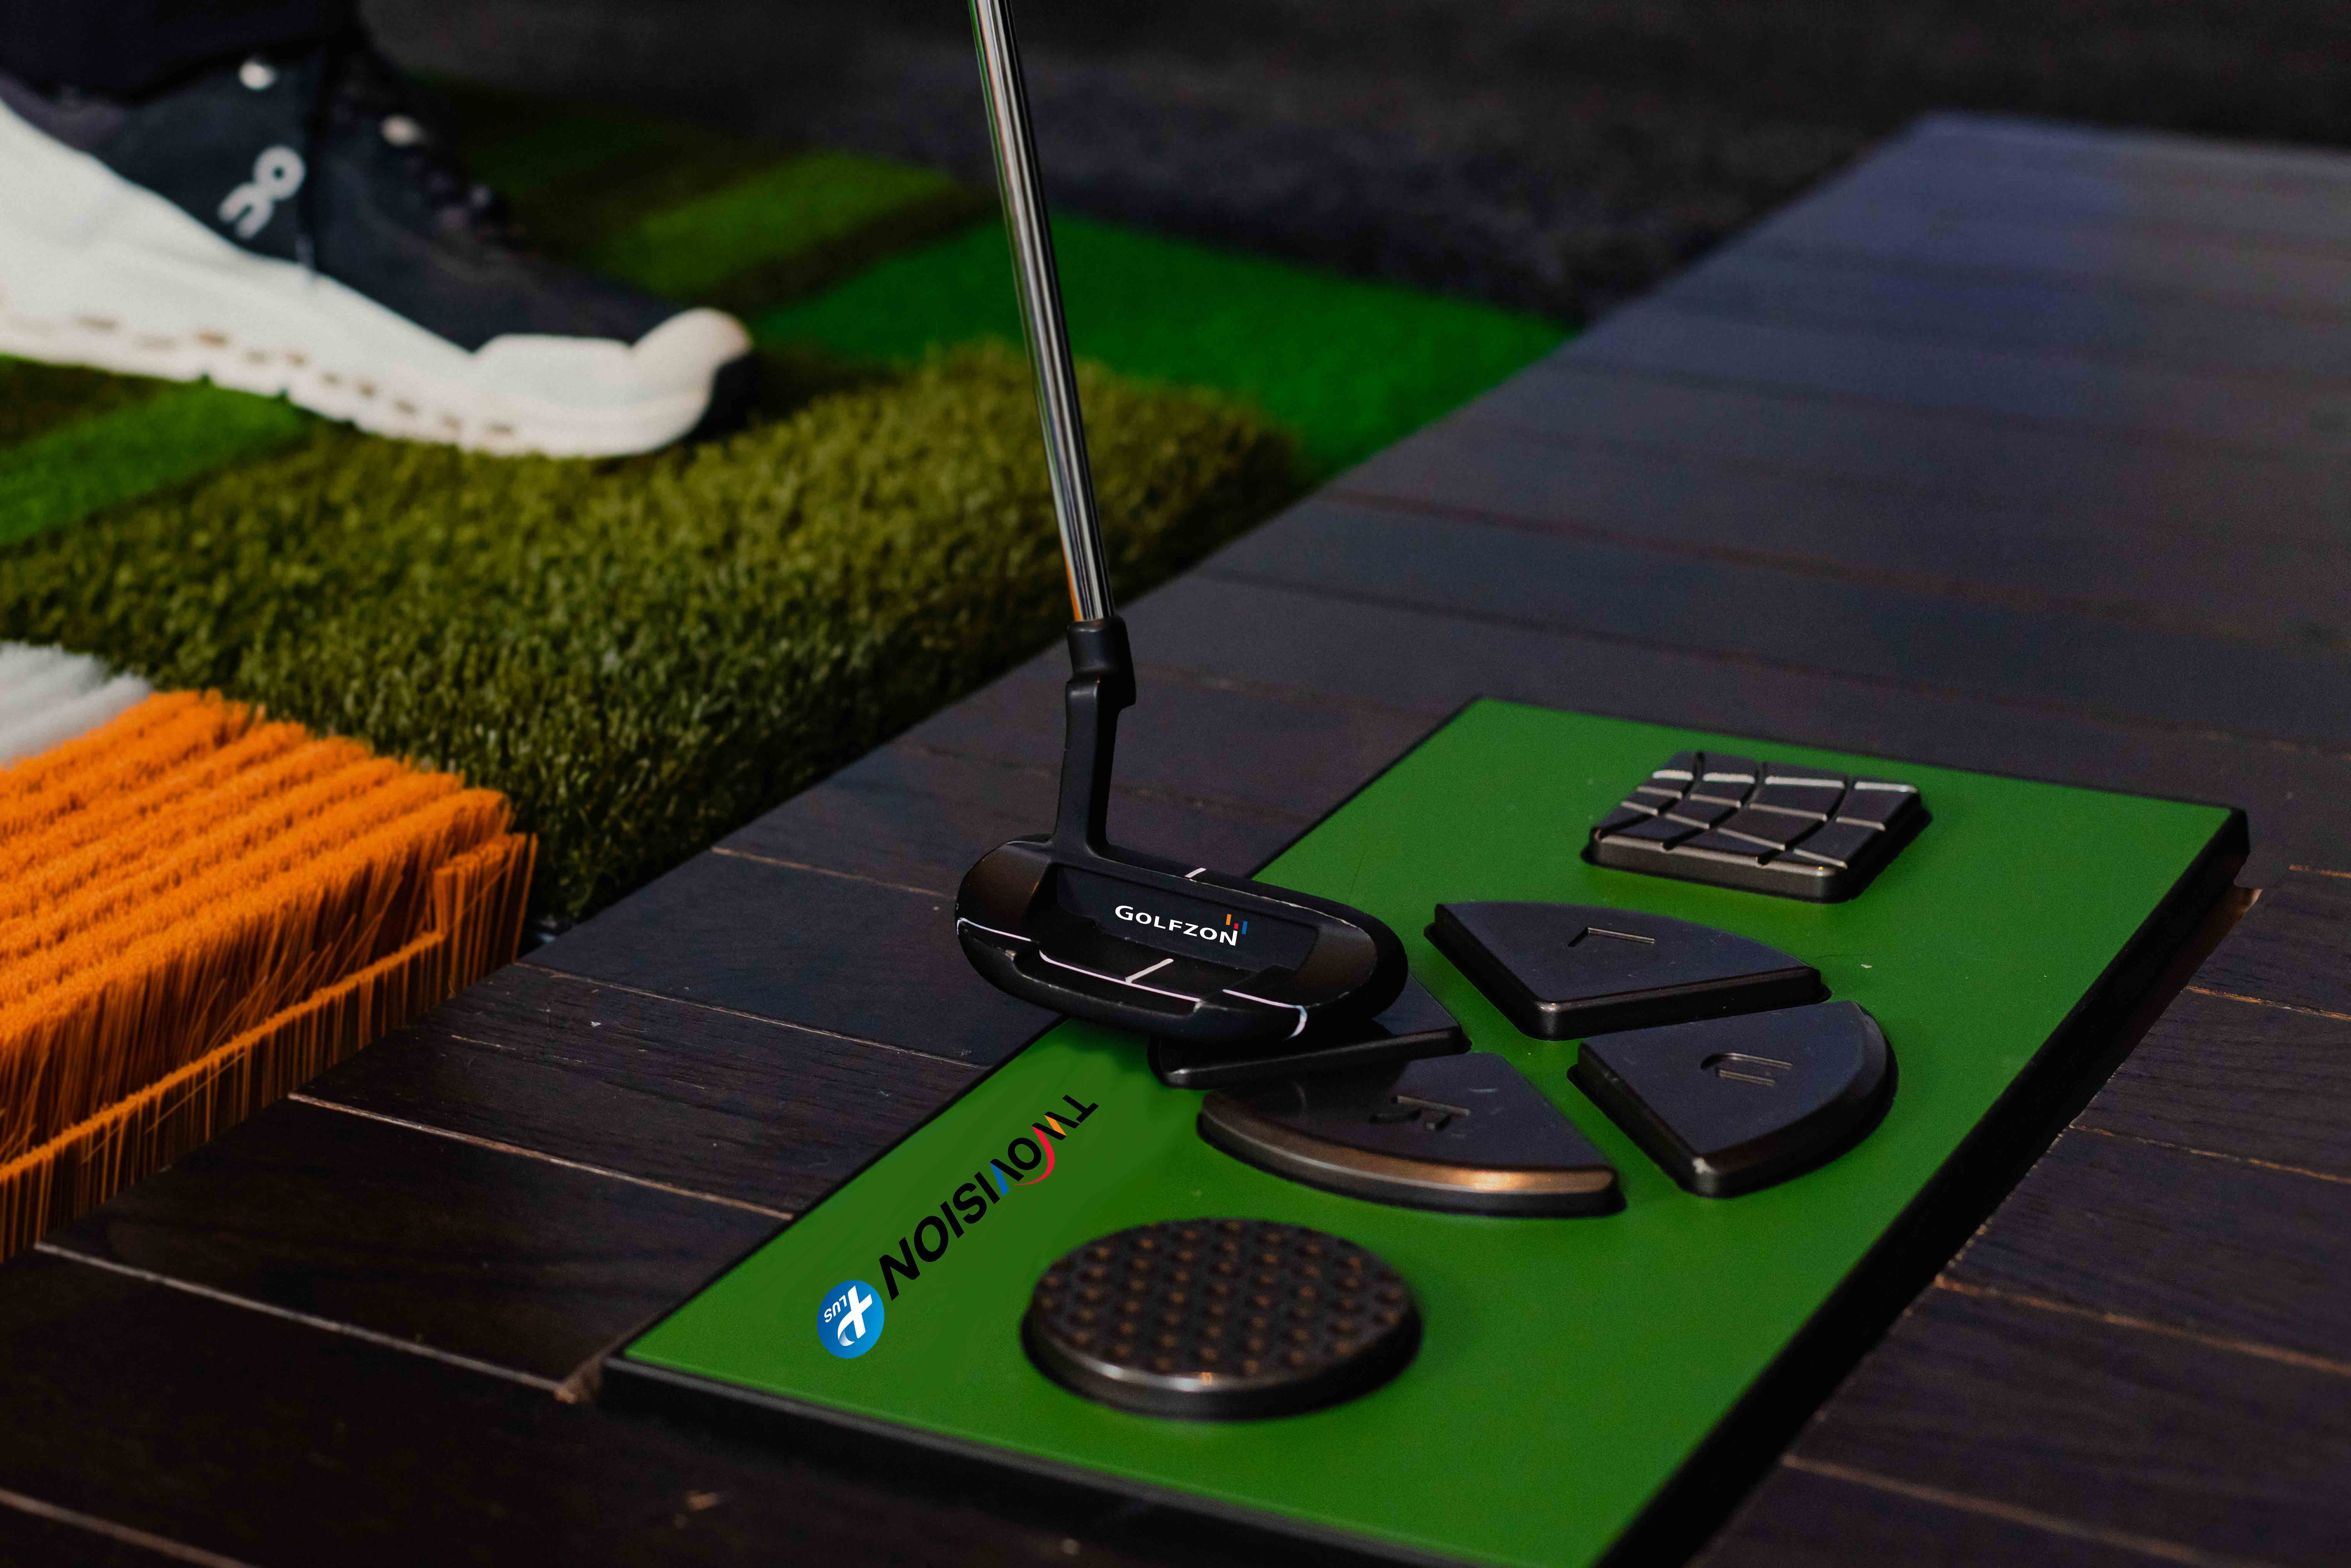 Golfzon's TwoVision Controller